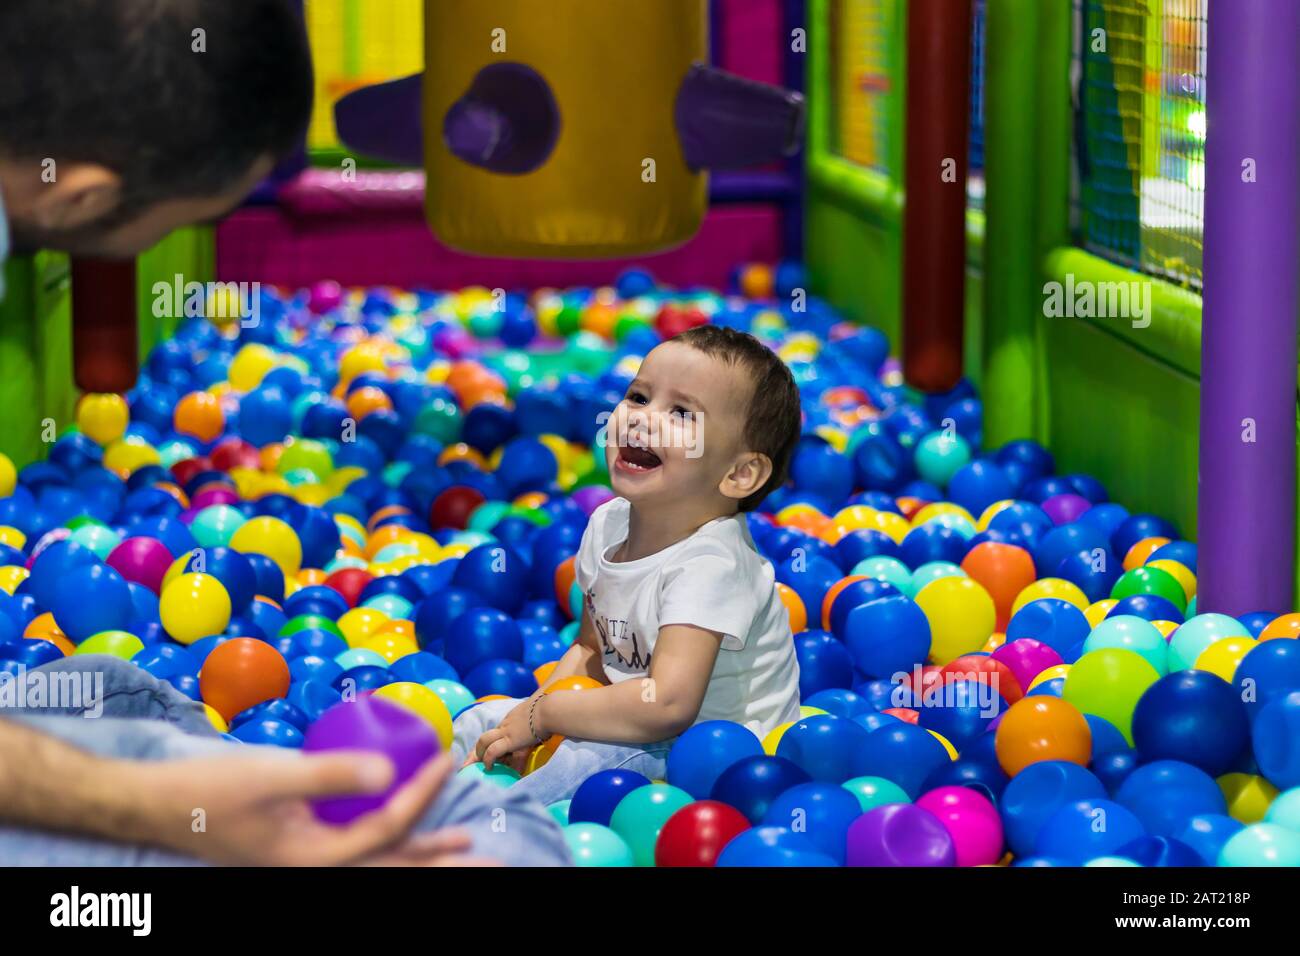 Ein süßes und glückliches kleines Mädchen, das auf einem Indoor-Spielplatz in einem Einkaufszentrum in Dubai, Vereinigte Arabische Emirate lachen und spielt. Stockfoto